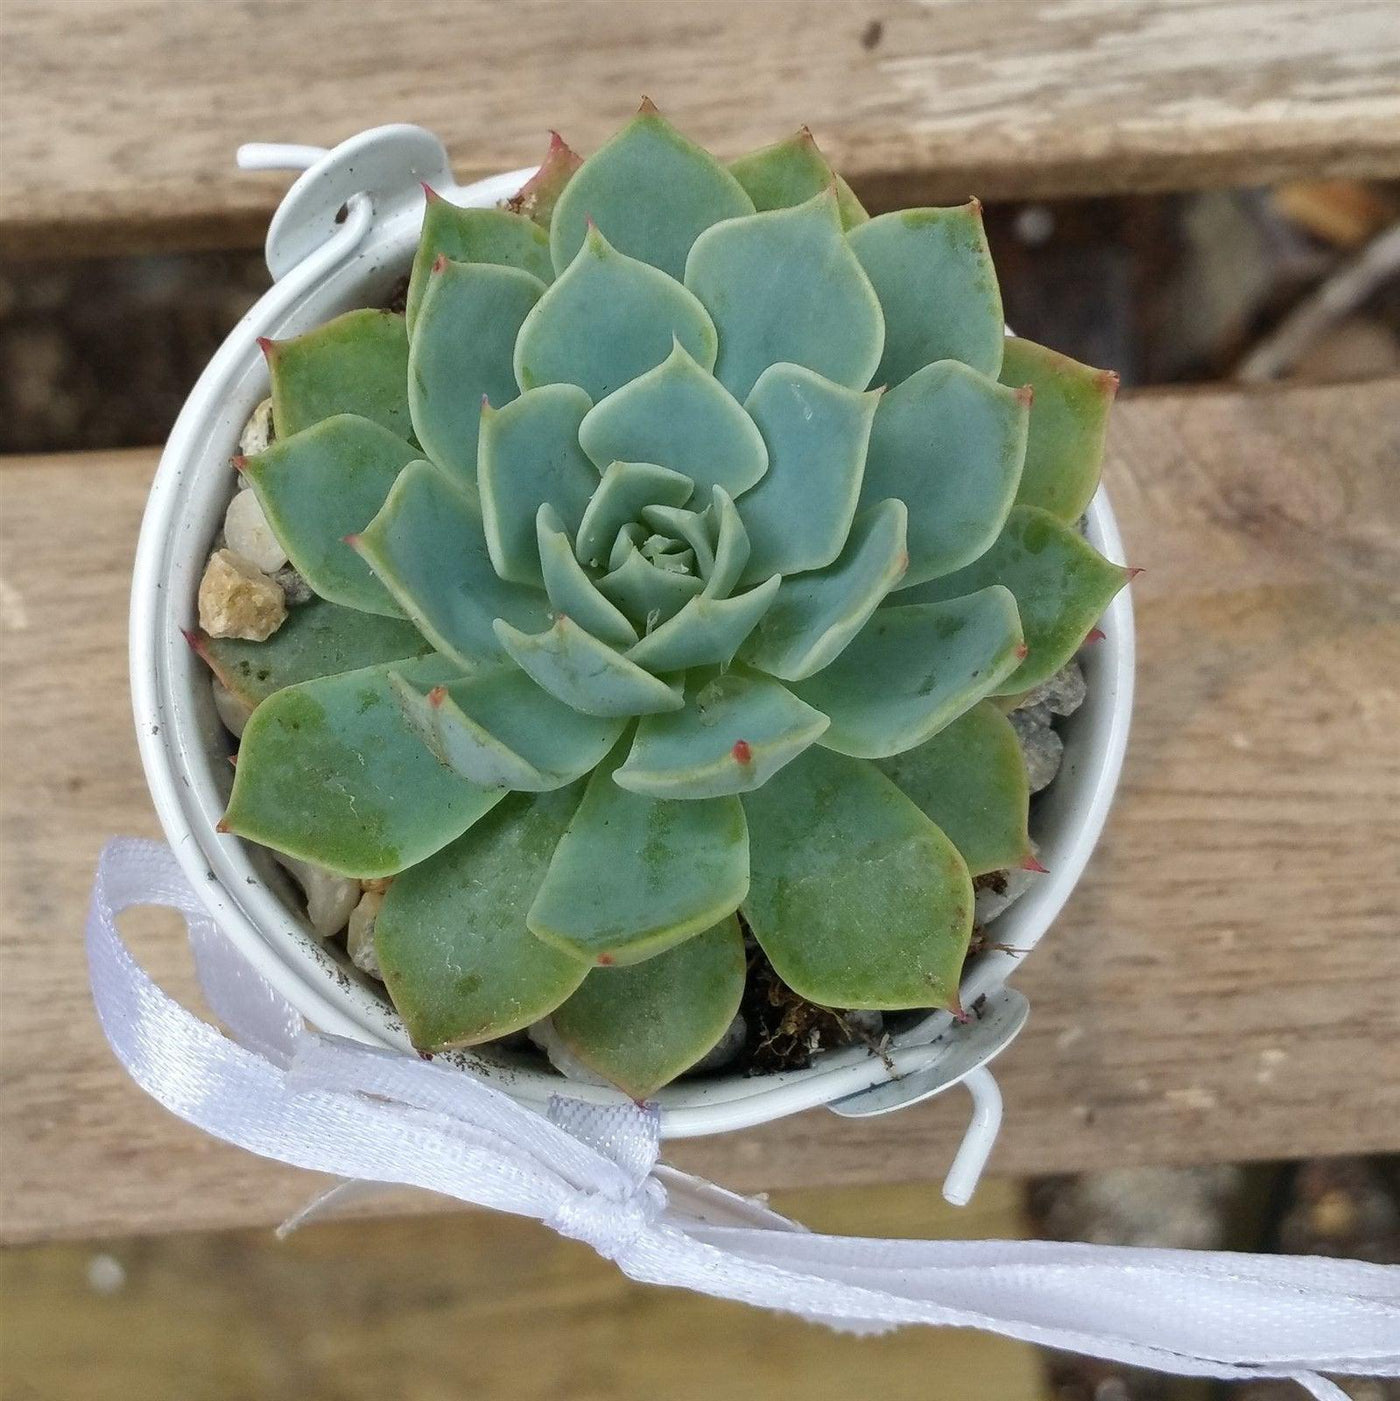 3 mini succulents in tin pails wedding or party favor arrangements